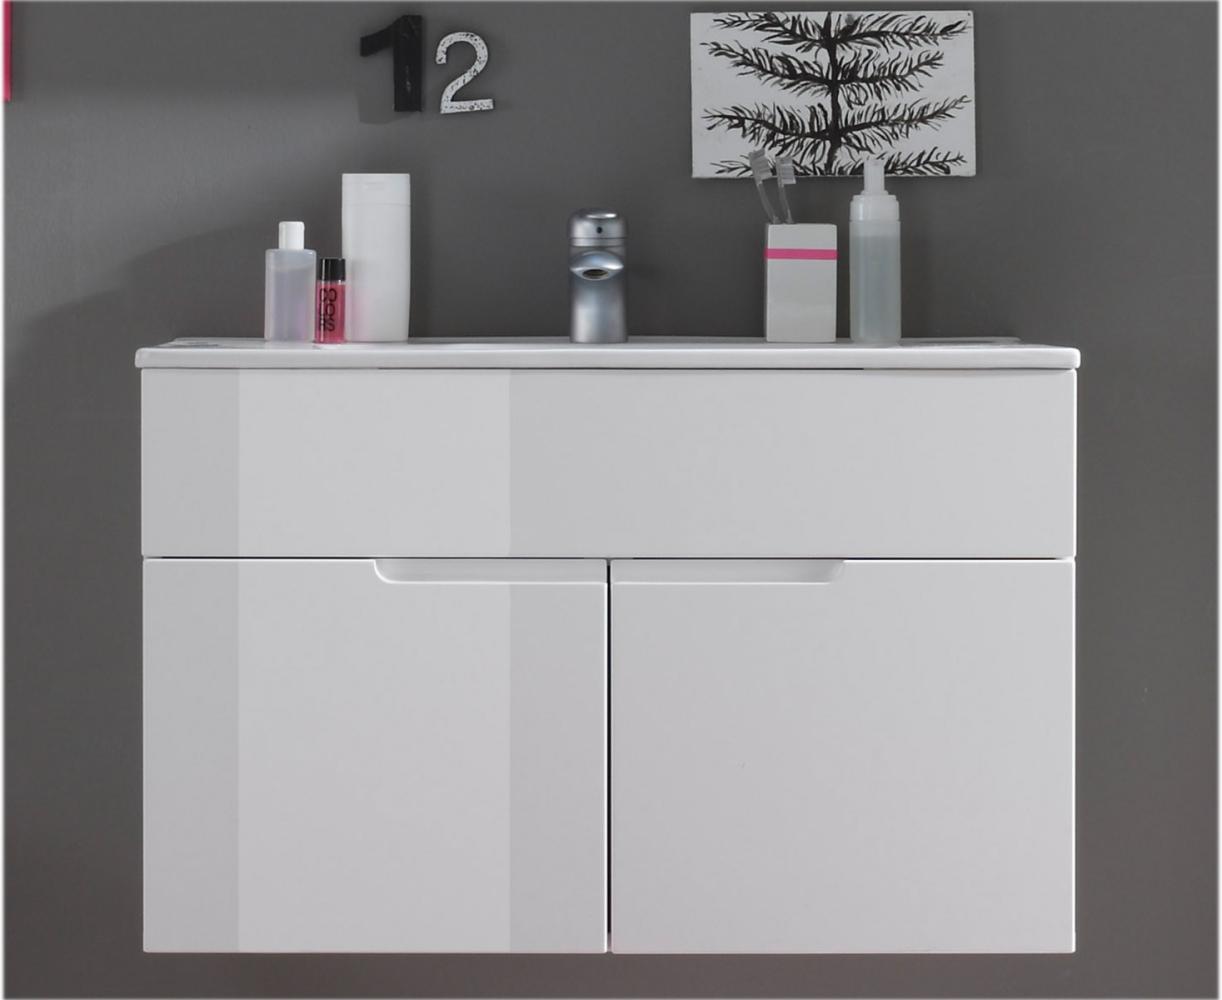 Waschtisch-Set >Suzette< in Weiß aus Keramik - 81x55x47cm (BxHxT) Bild 1